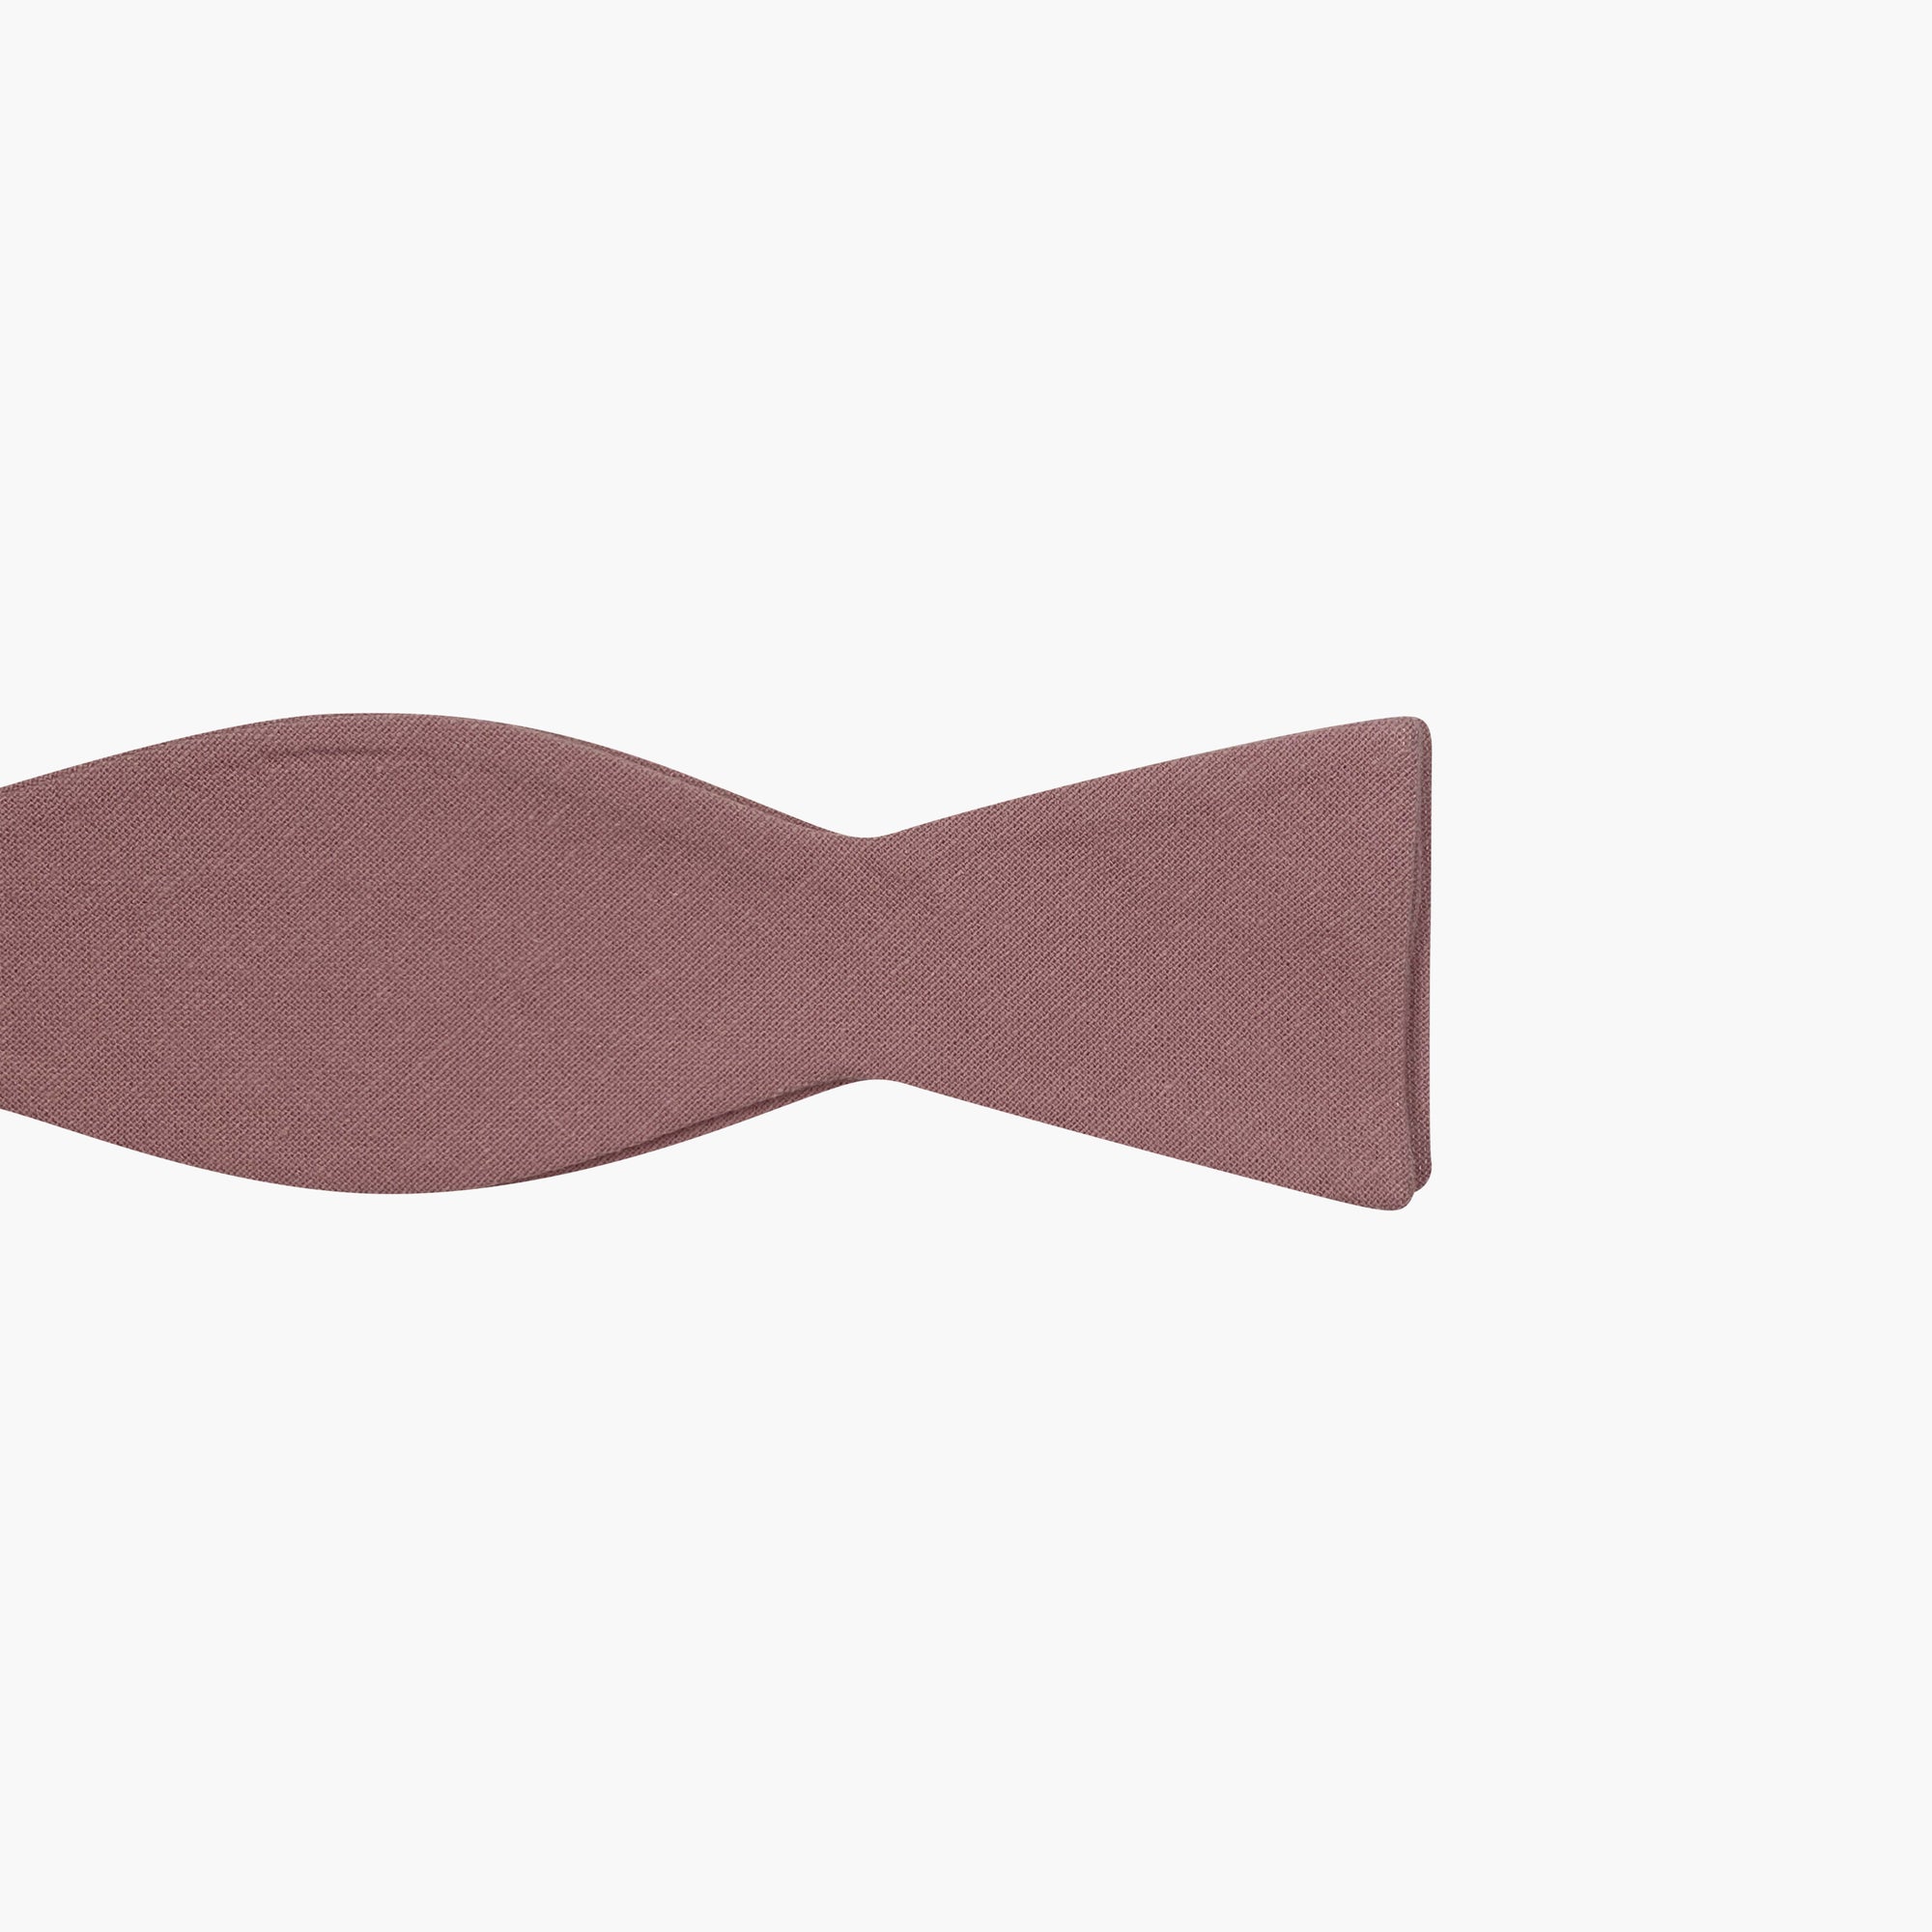 CLANCY || SELF TIE BOW TIE - Self-Tie Bow Tie